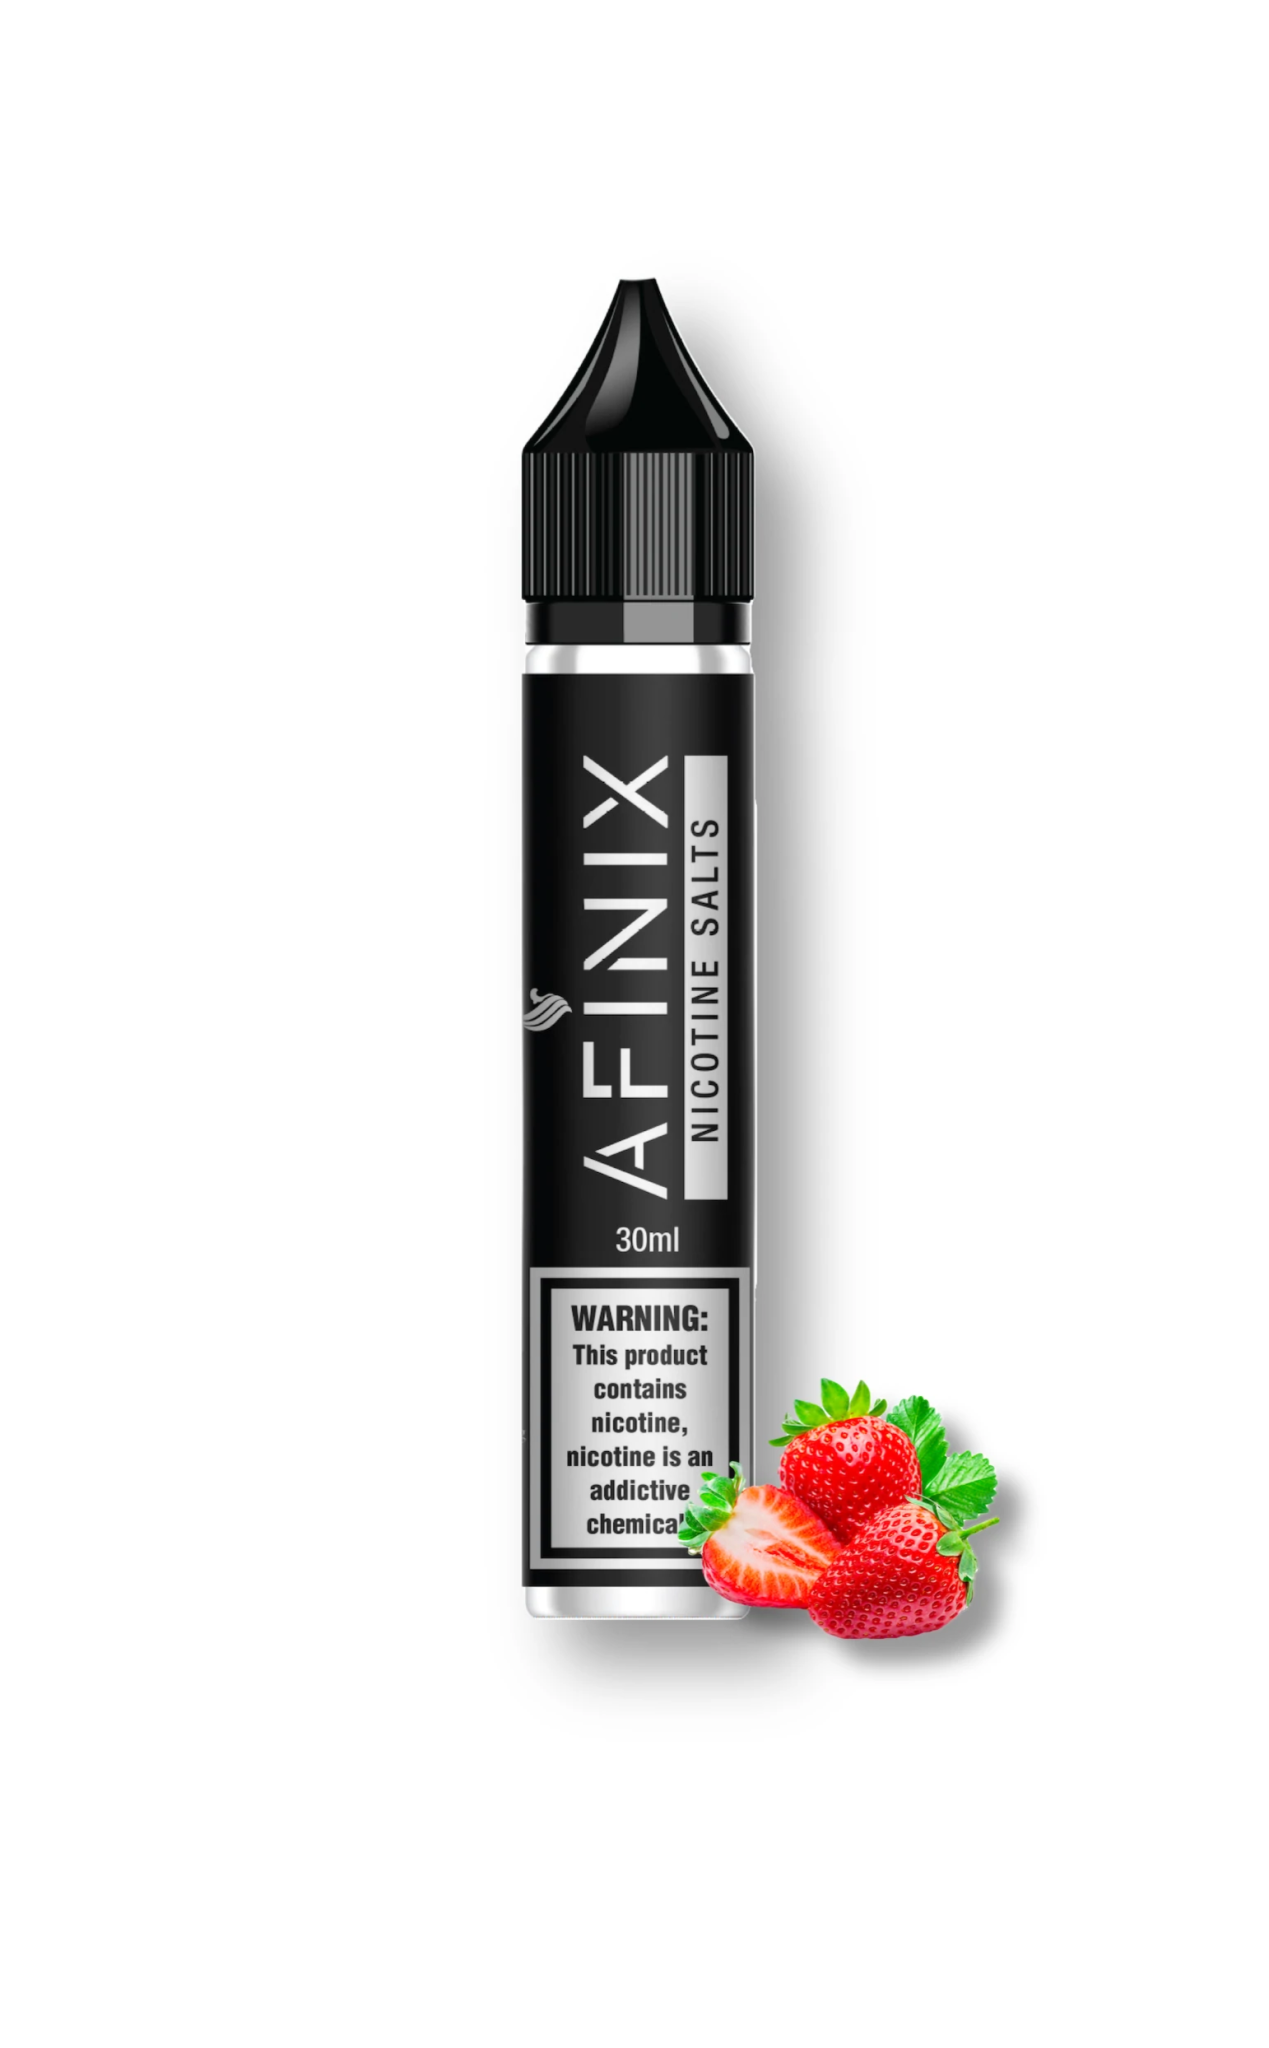 AFINIX 30ml Strawberry Guava - EUK